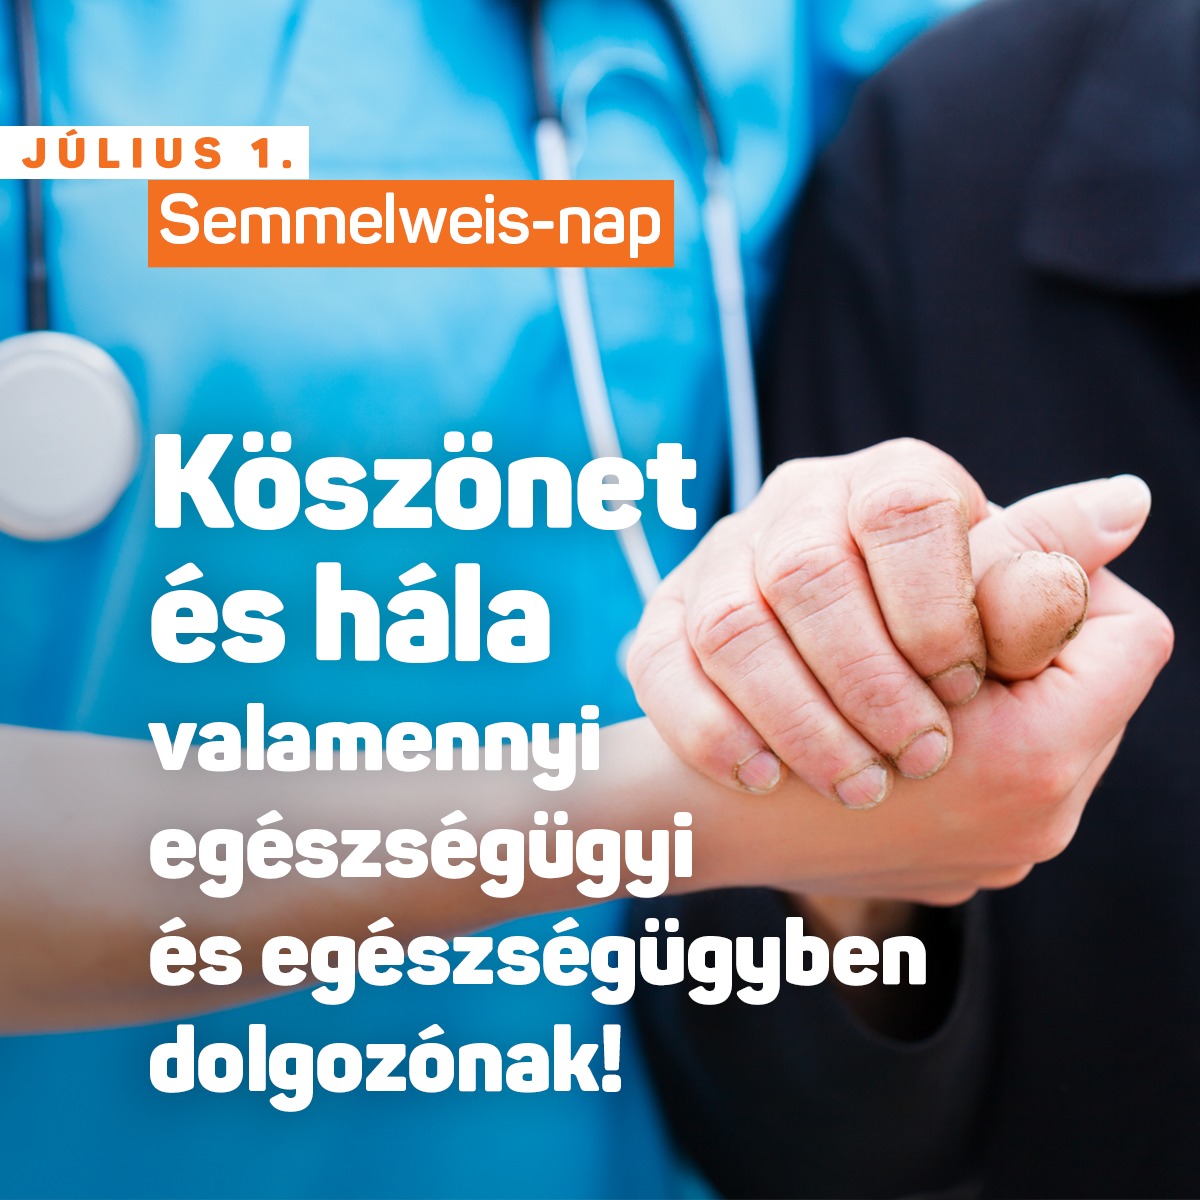 Köszönet és hála valamennyi egészségügyi és egészségügyben dolgozónak! – Fidesz Kecskemét